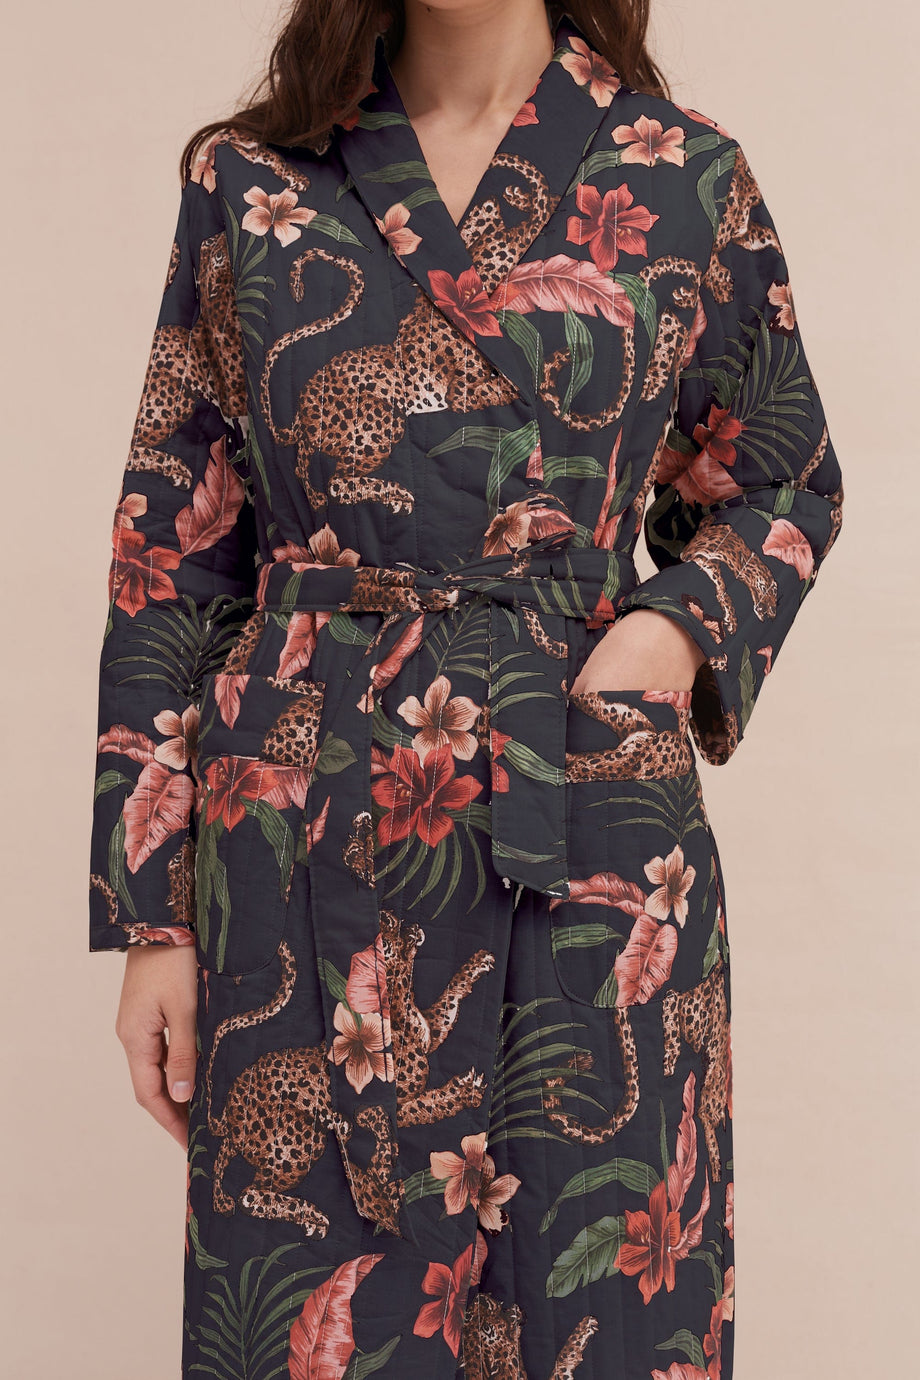 Quilted Robe Soleia Leopard Print – Desmond & Dempsey